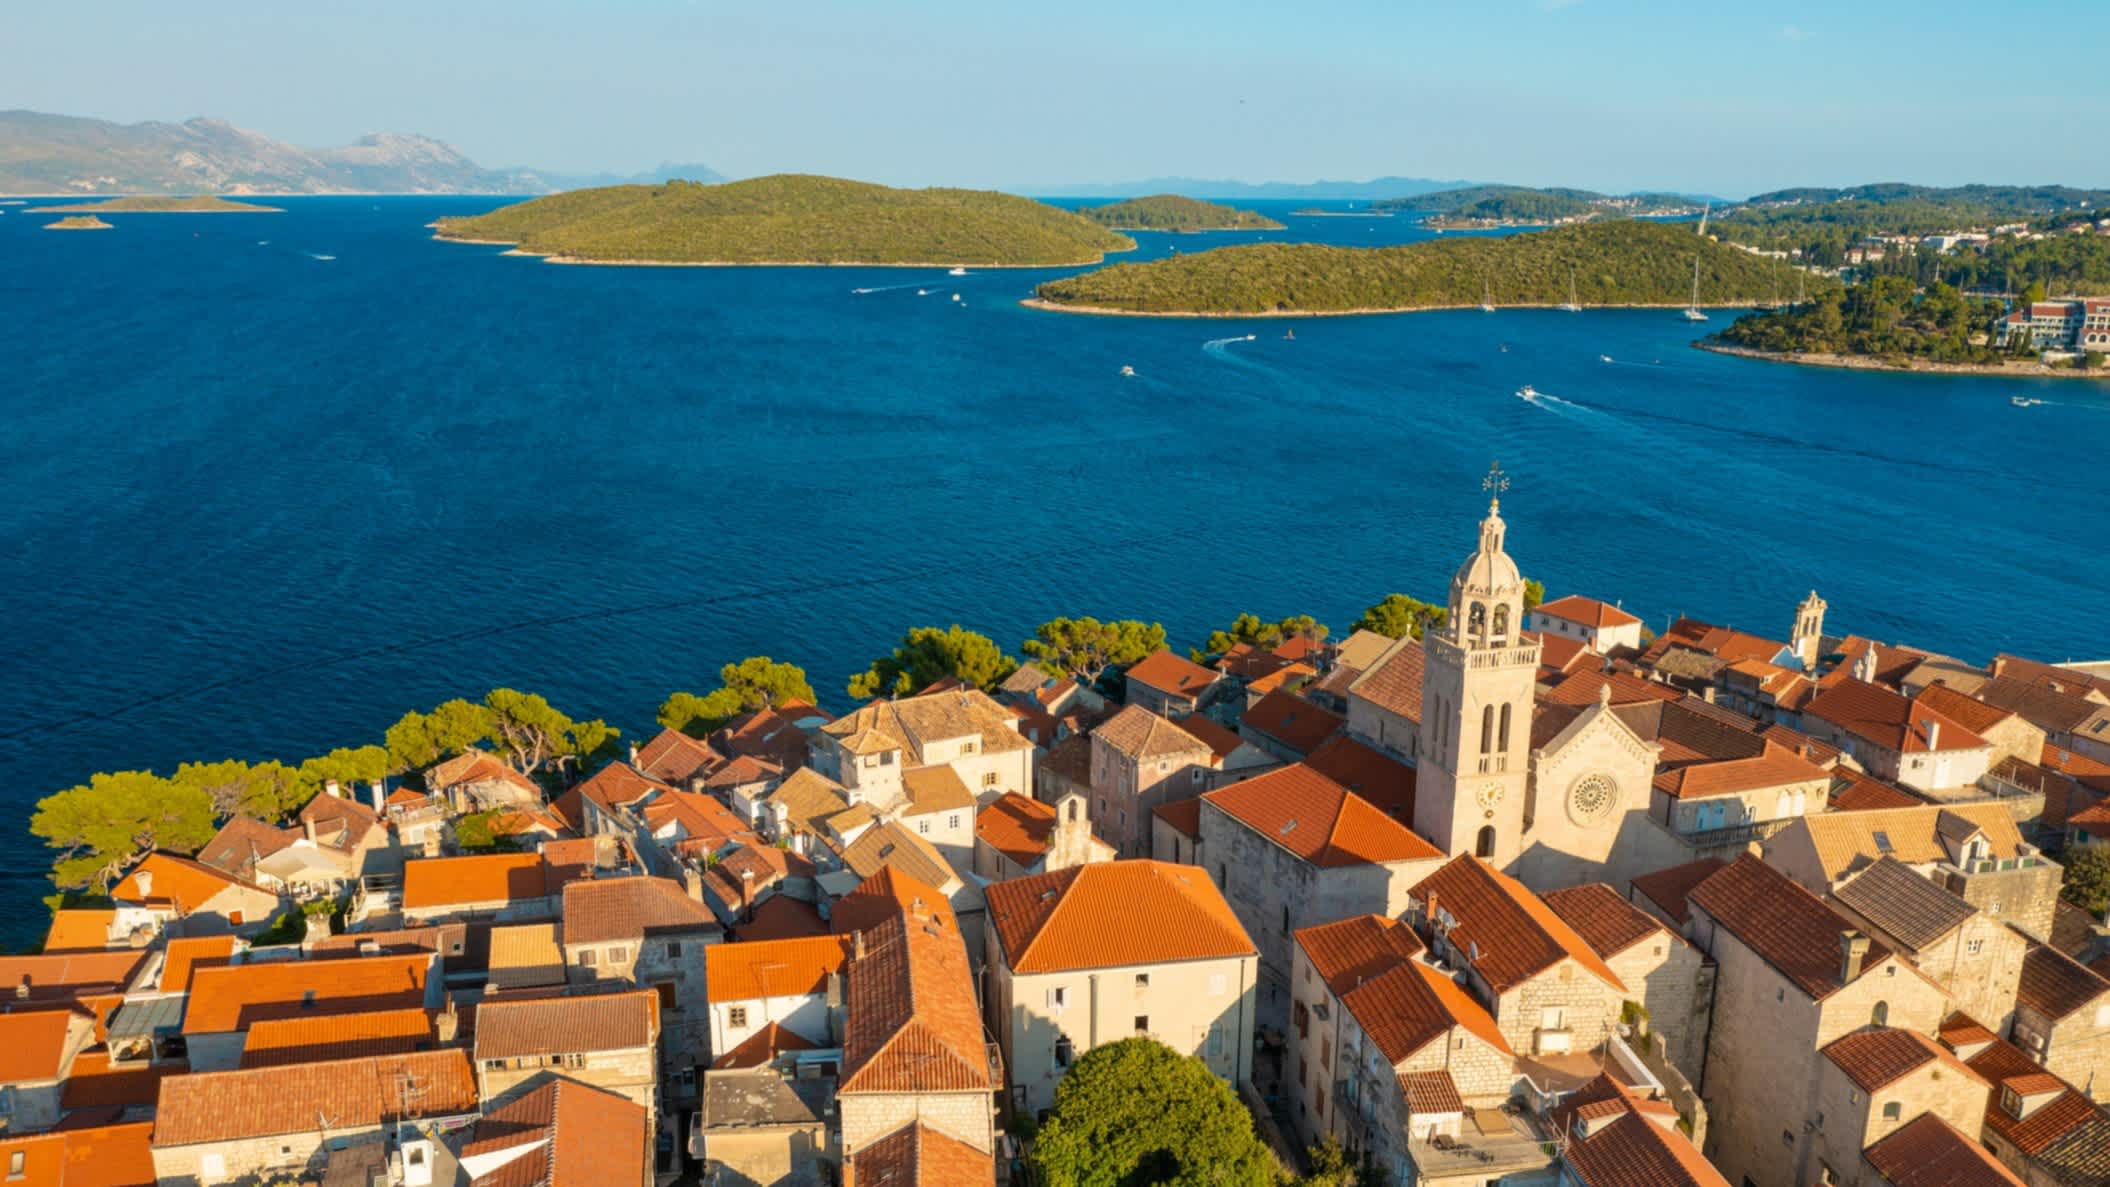 Vue aérienne de la ville de Korcula sur l'île de Korcula, Adriatique, Croatie